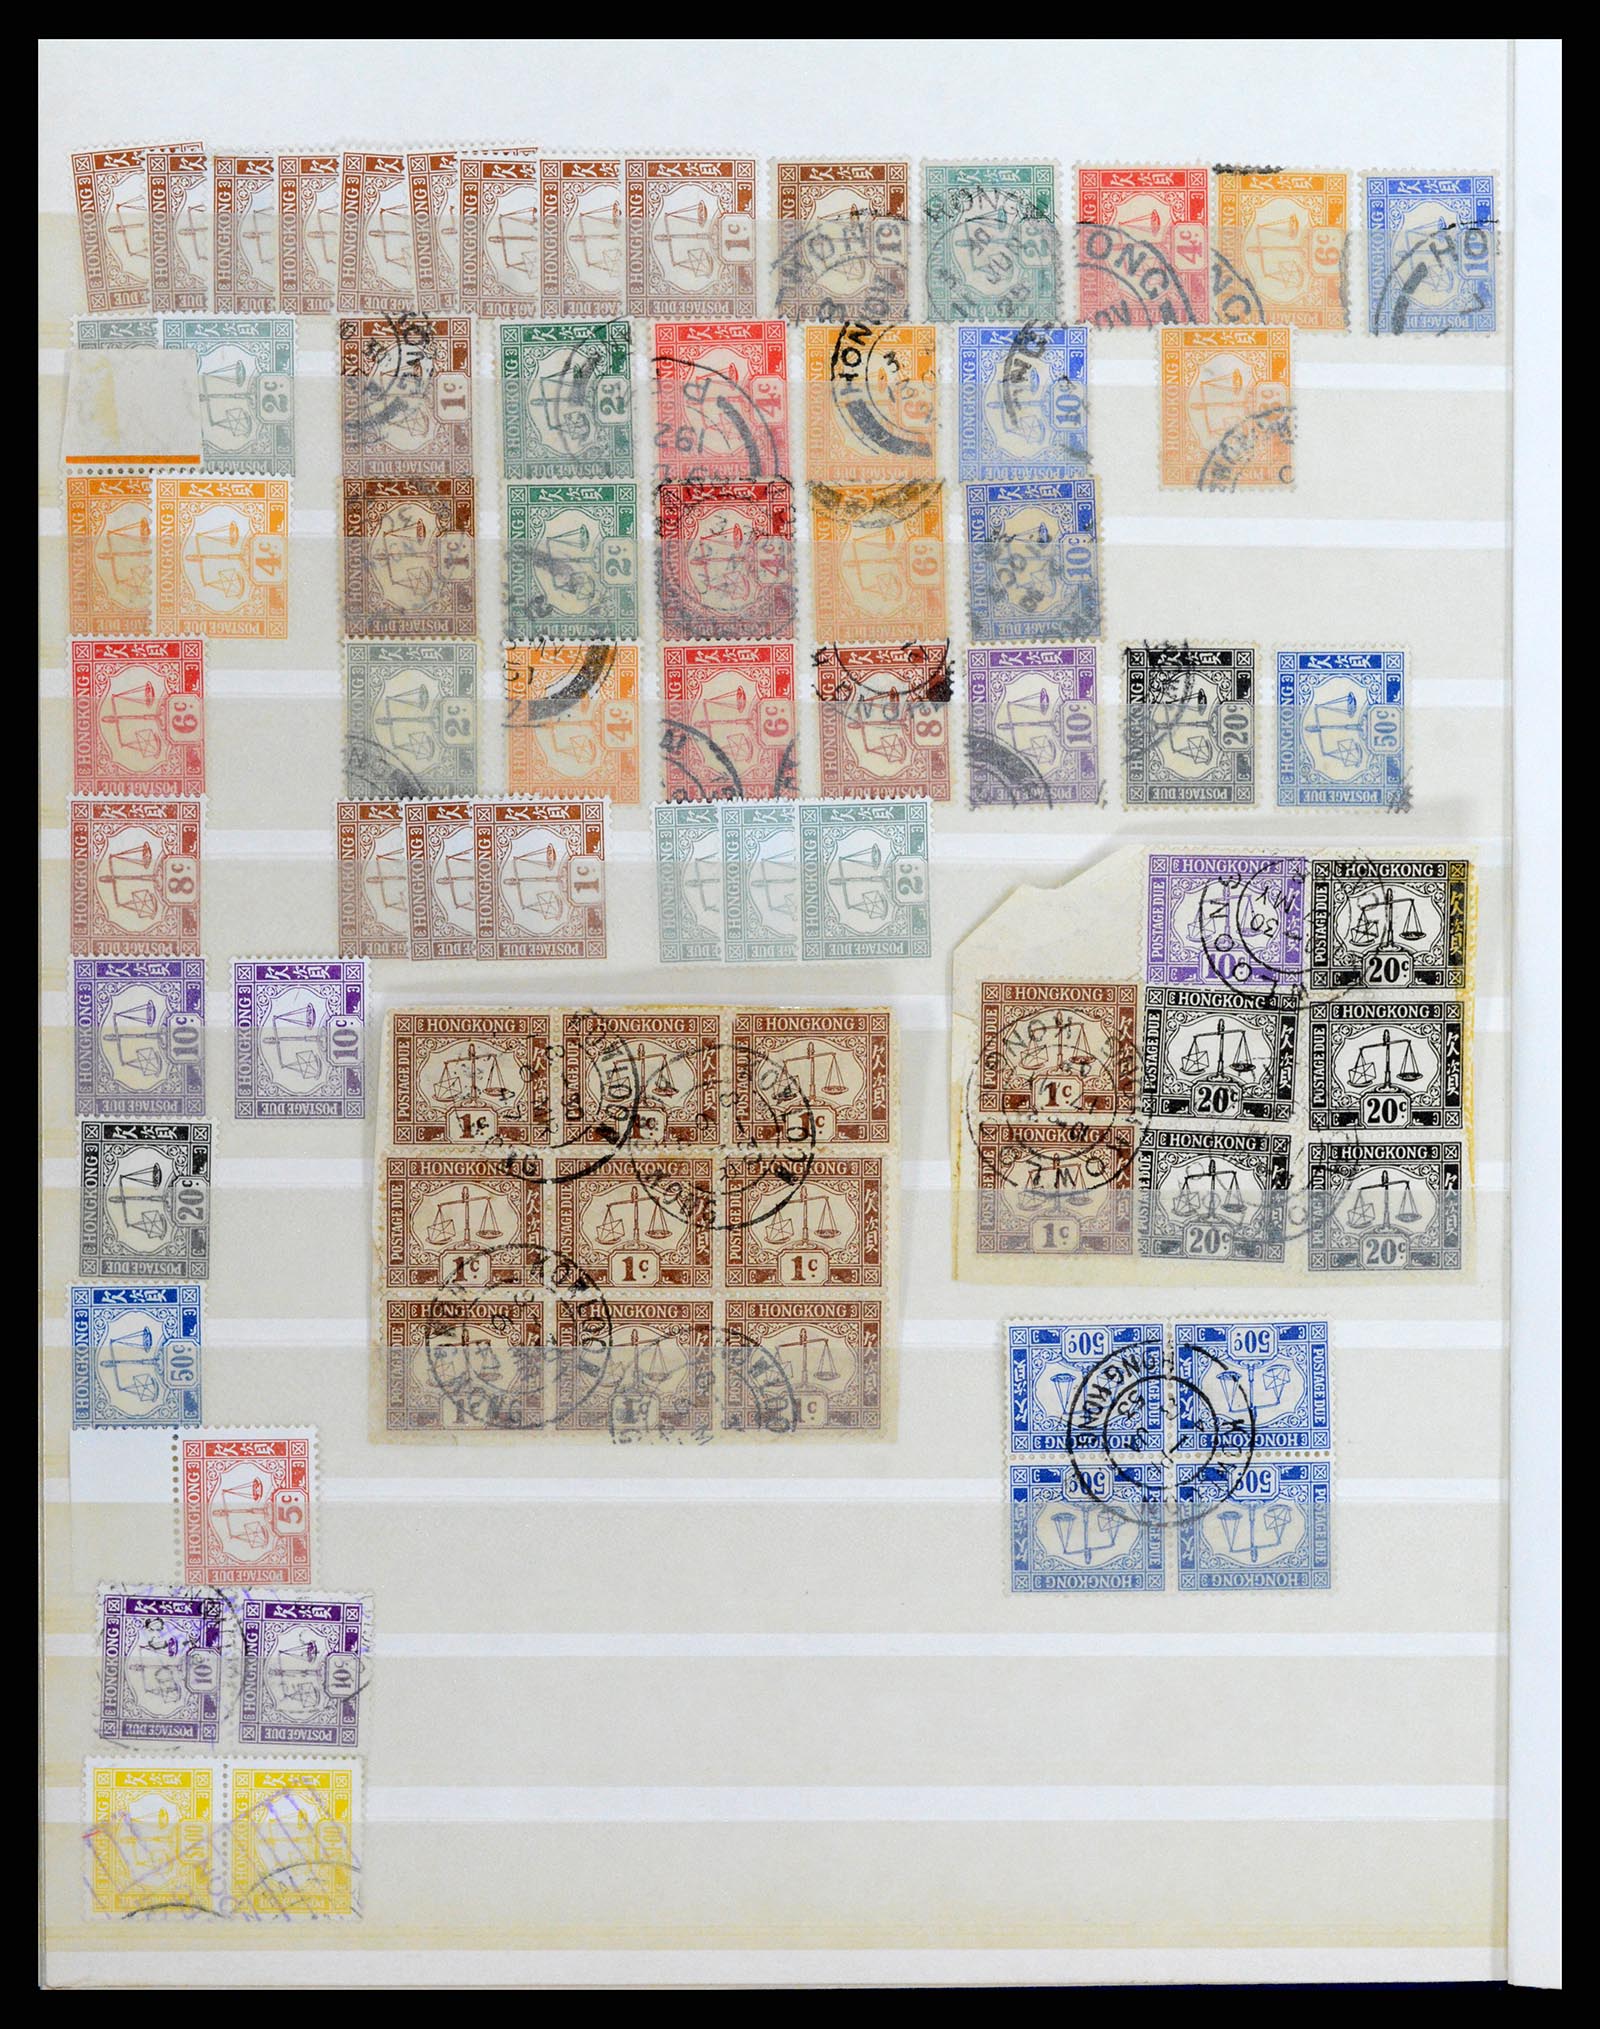 37358 053 - Stamp collection 37358 Hong Kong 1861-1997.